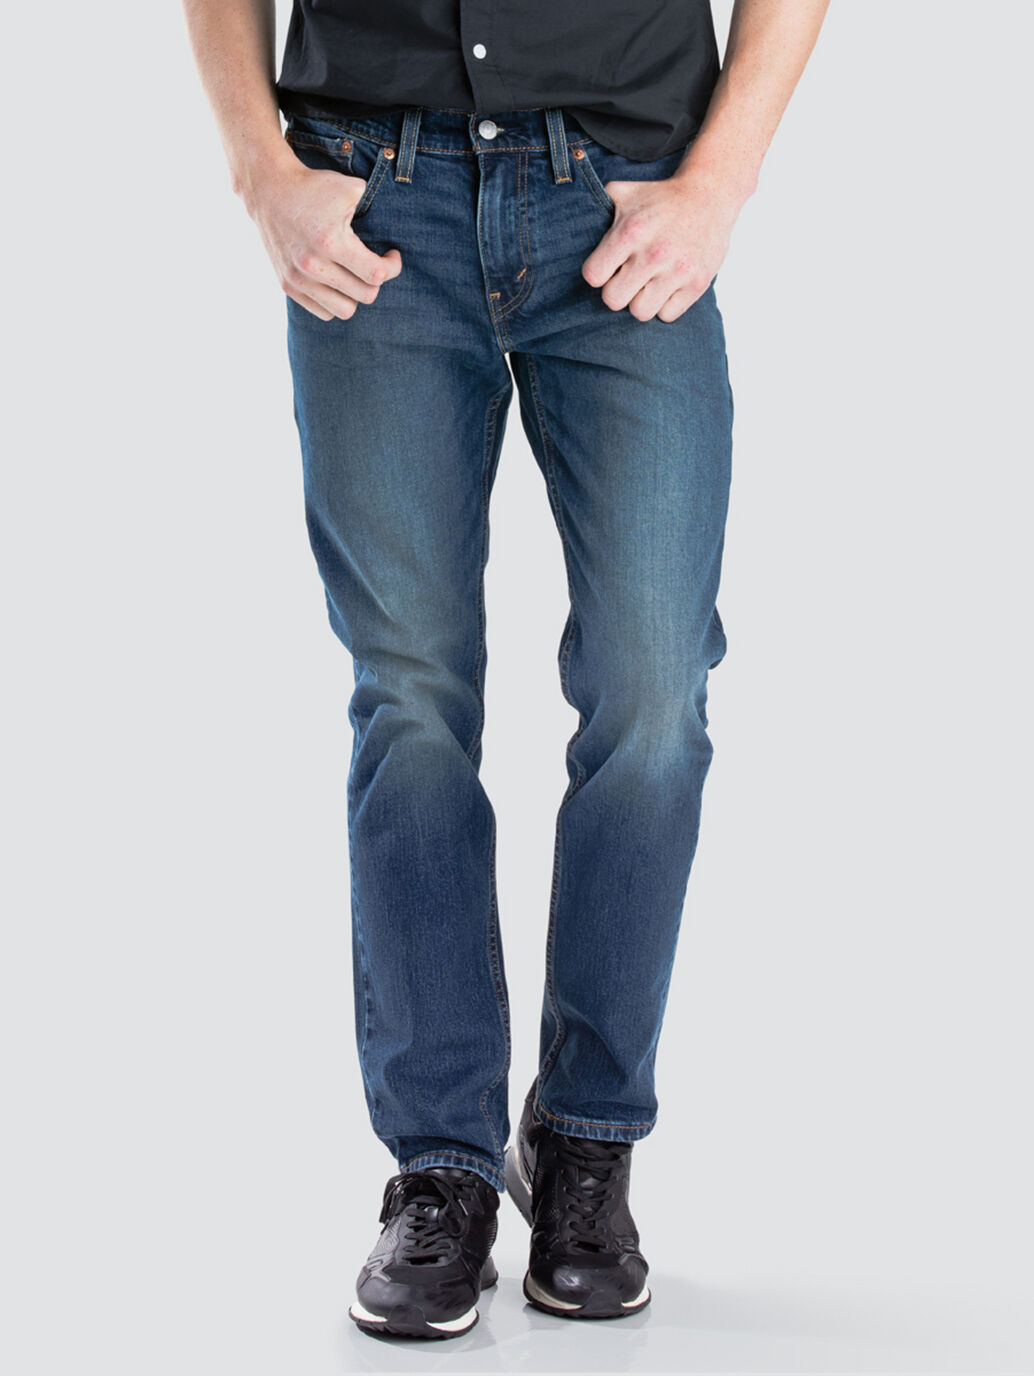 jeans levis 511